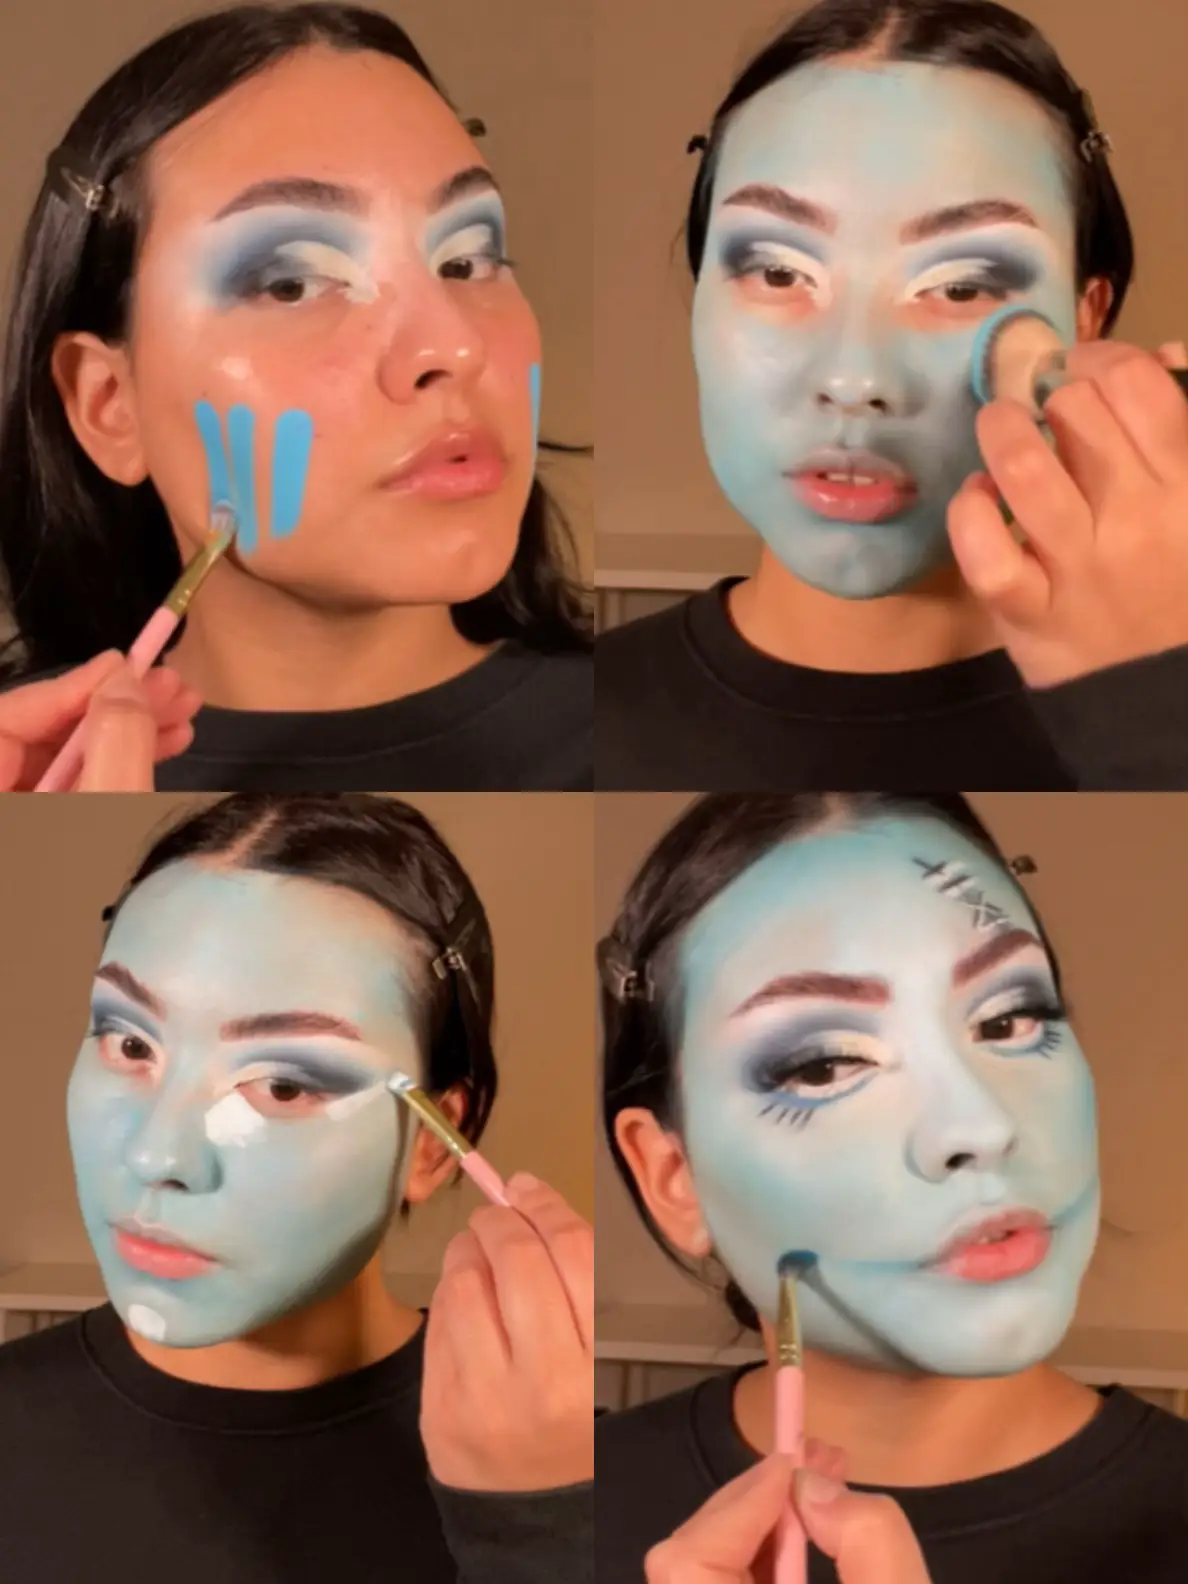 Blue Face Makeup